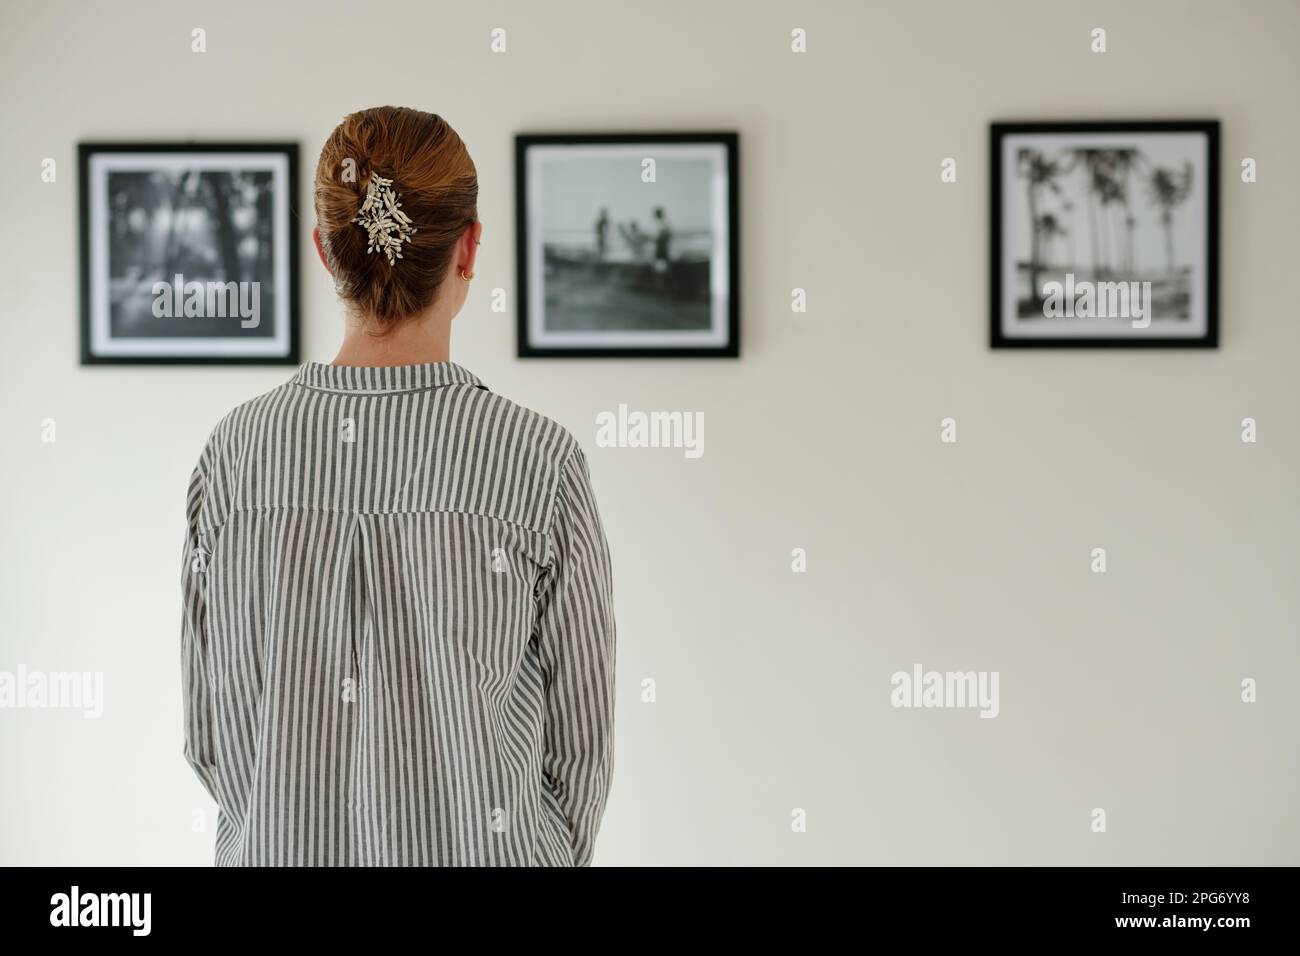 Rückansicht einer jungen Frau in gestreiftem Hemd, die vor der Wand steht, mit Bildern oder Kunstwerken in schwarzen Rahmen, während sie die Kunstgalerie besucht Stockfoto